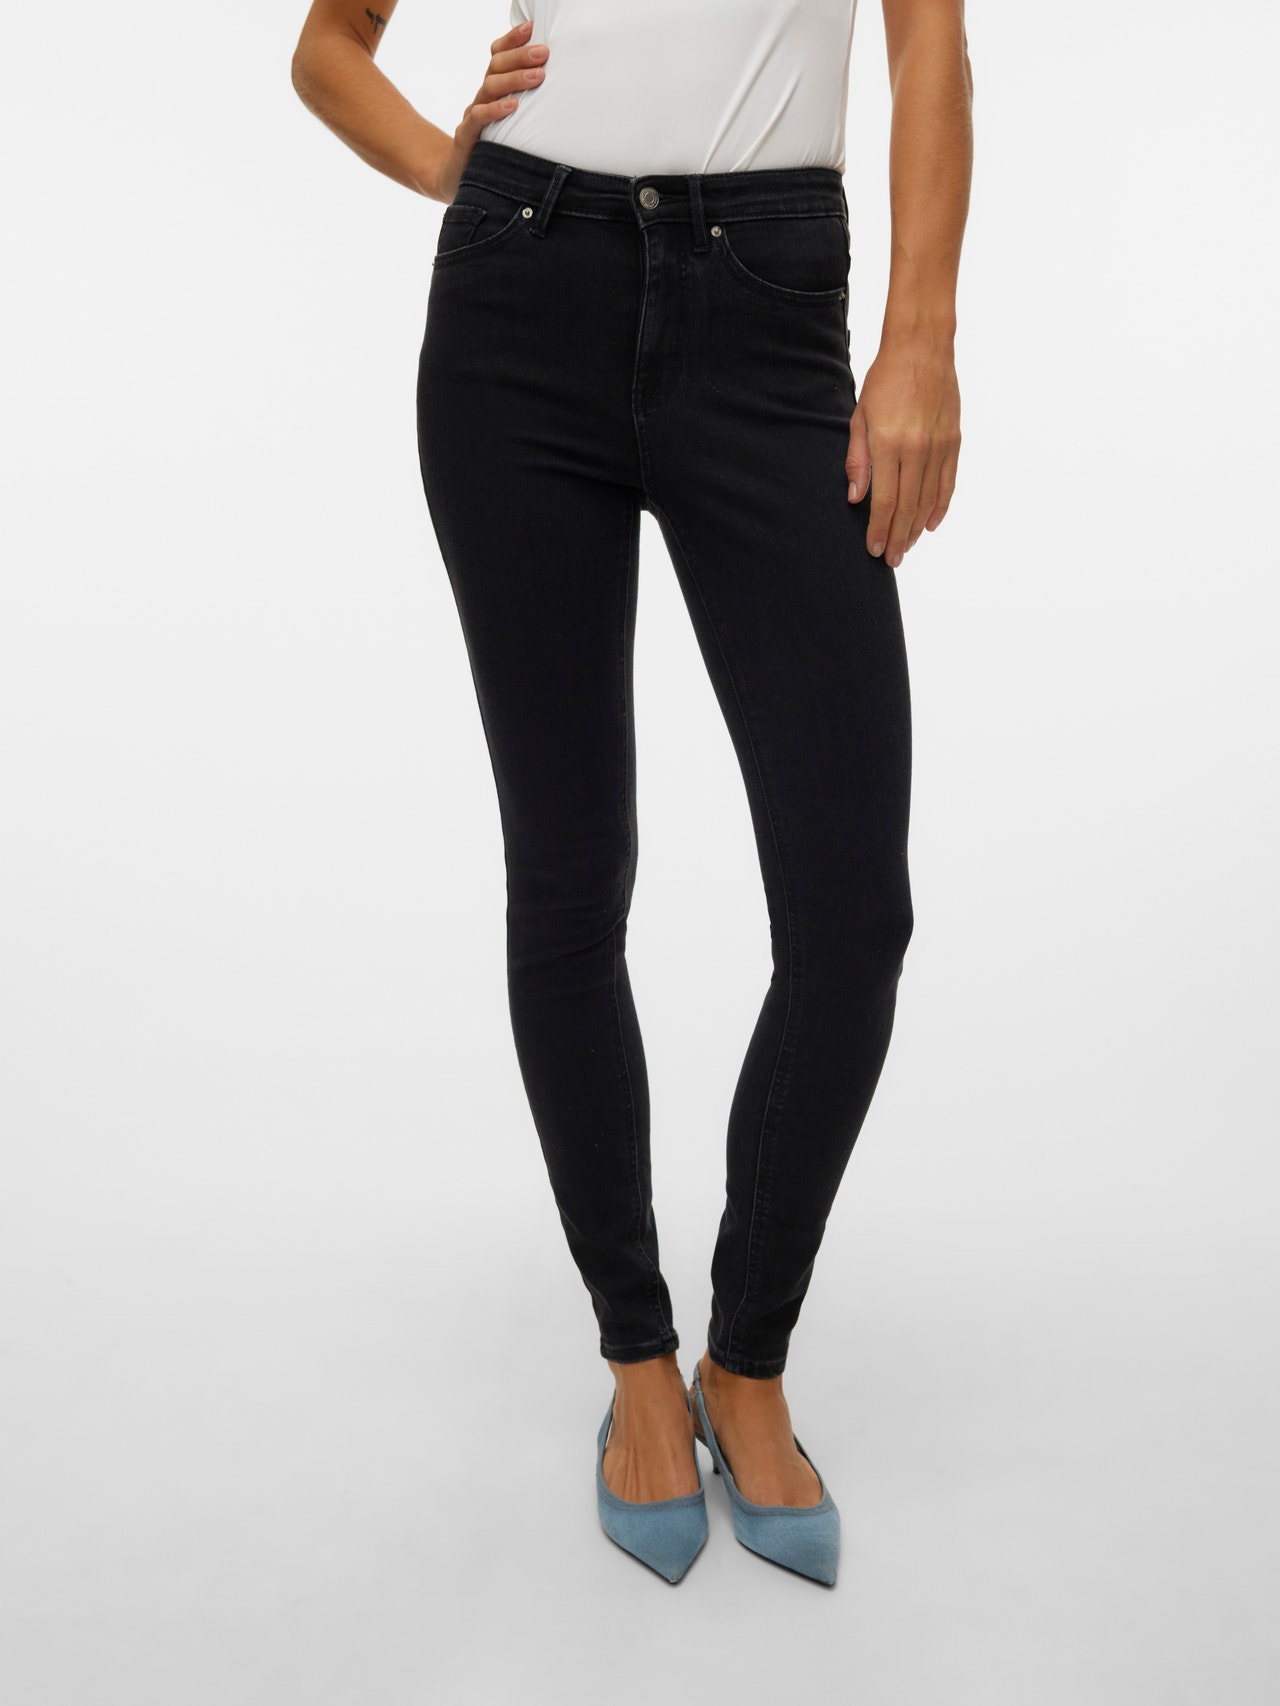 Vero Moda VMSOPHIA Krój skinny Jeans -Black Denim - 10315577